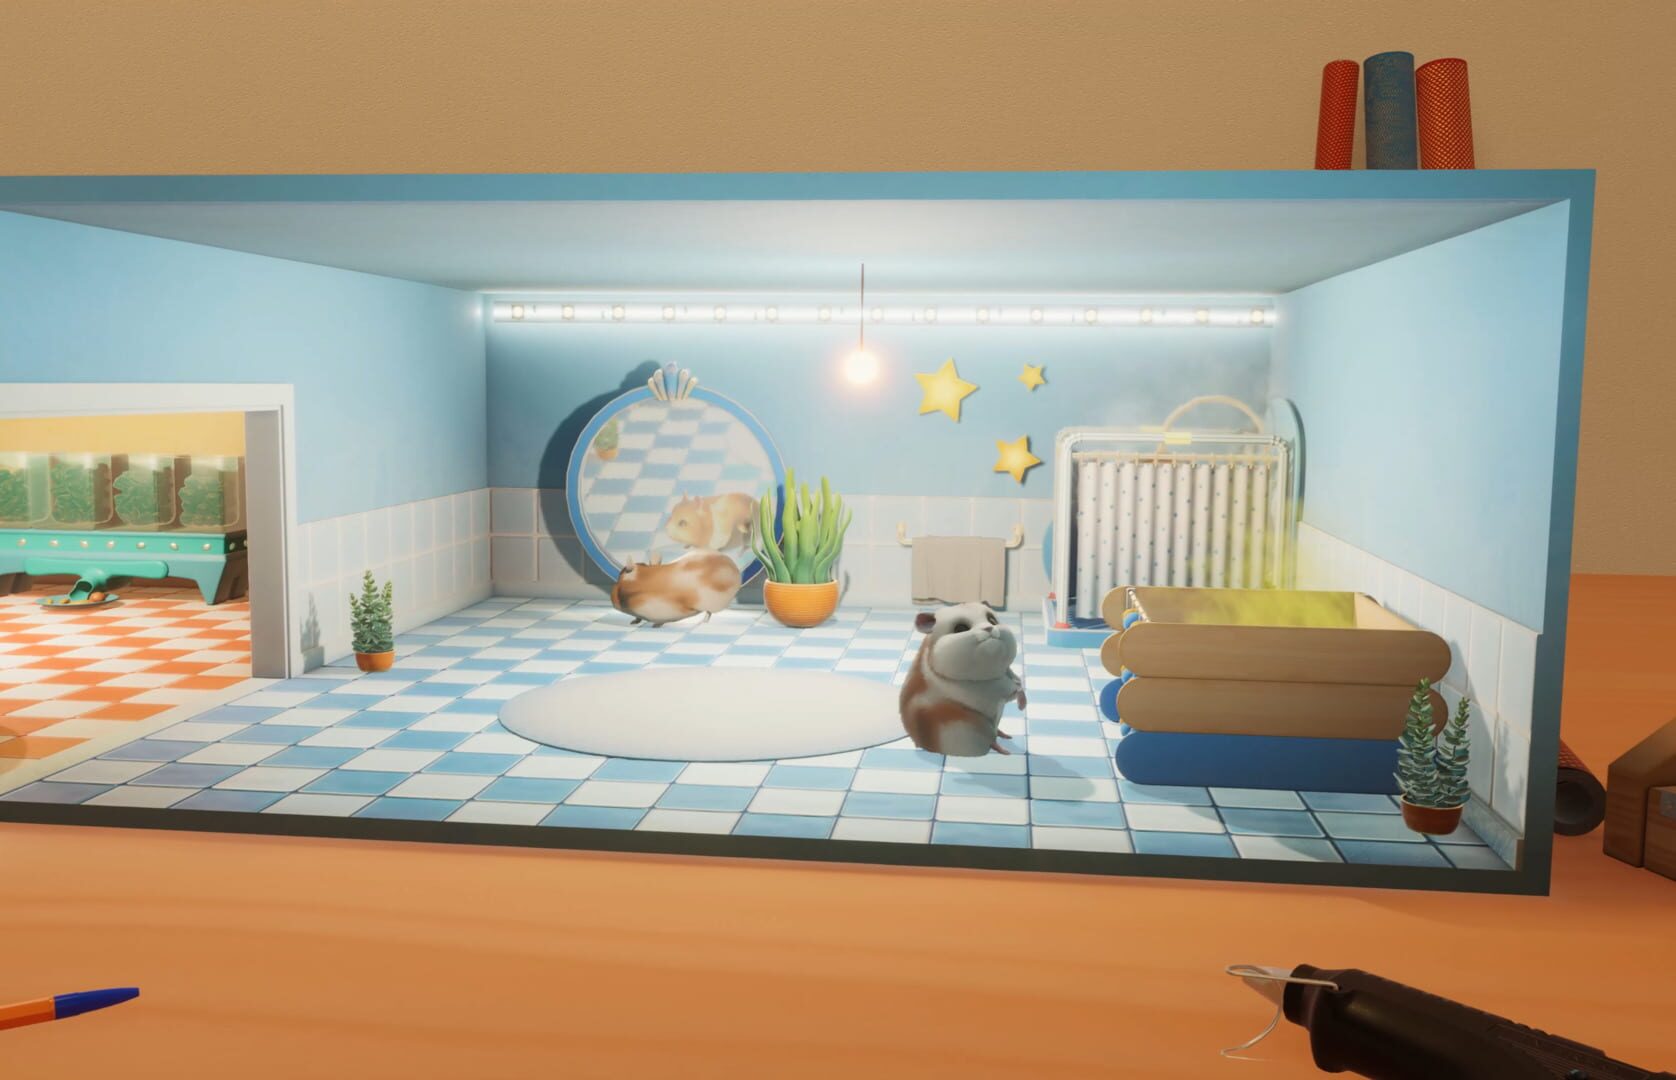 Hamster Playground screenshot